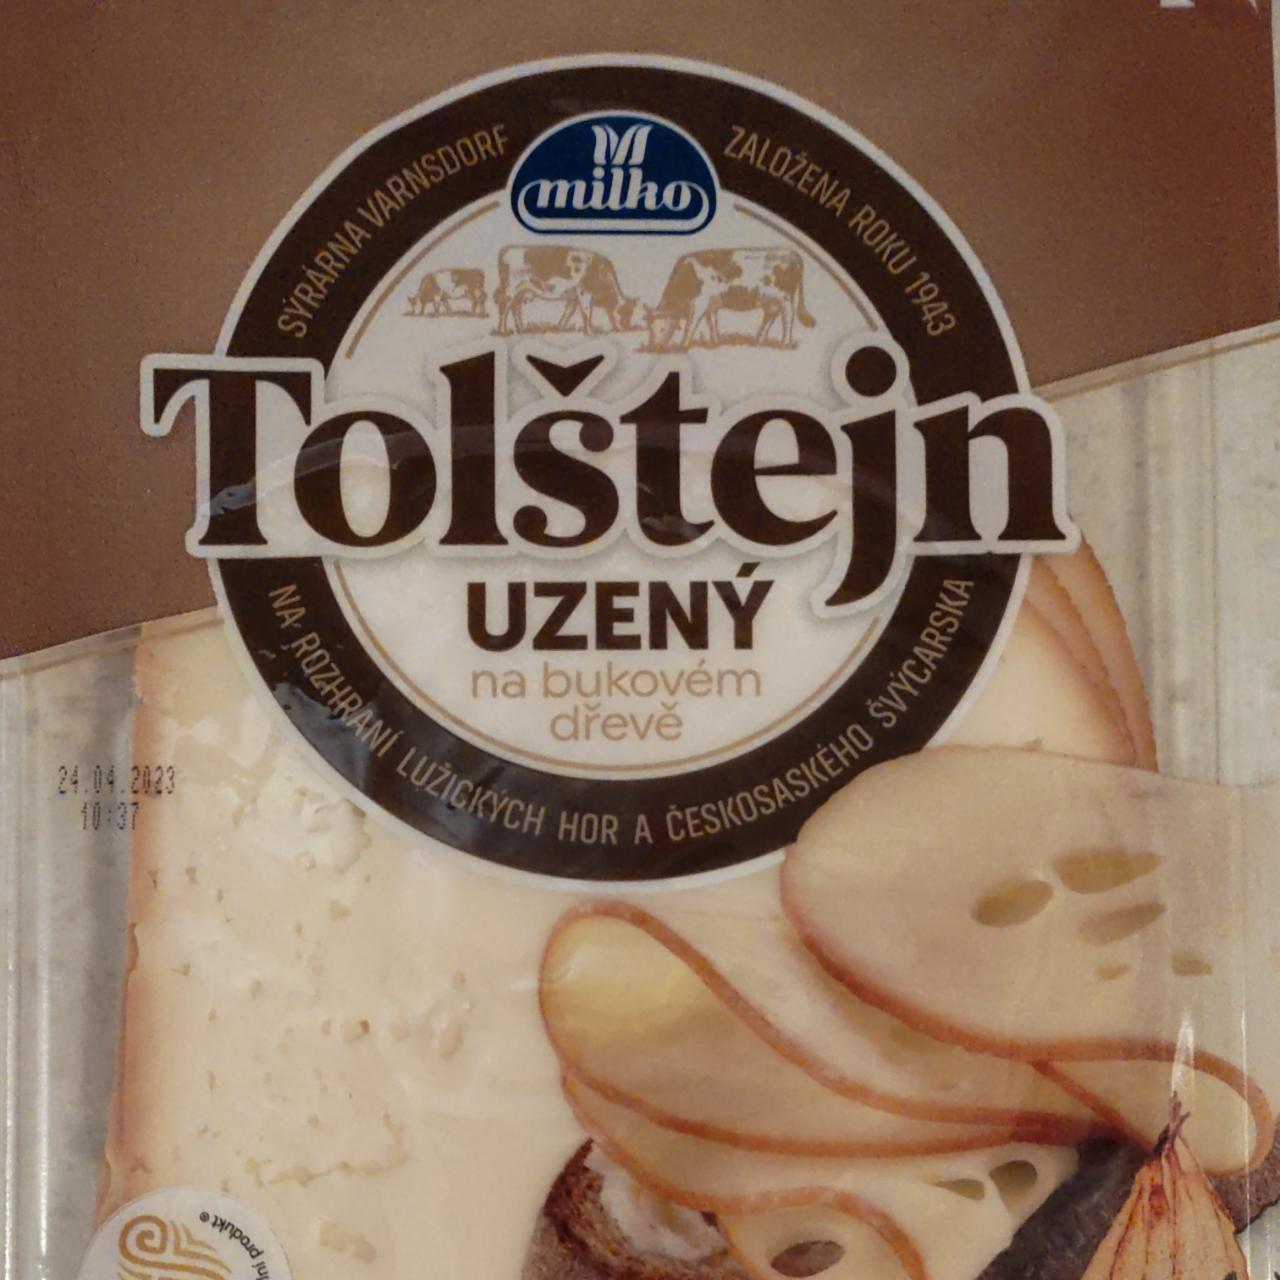 Fotografie - Tolštejn uzený na bukovém dřevě Milko